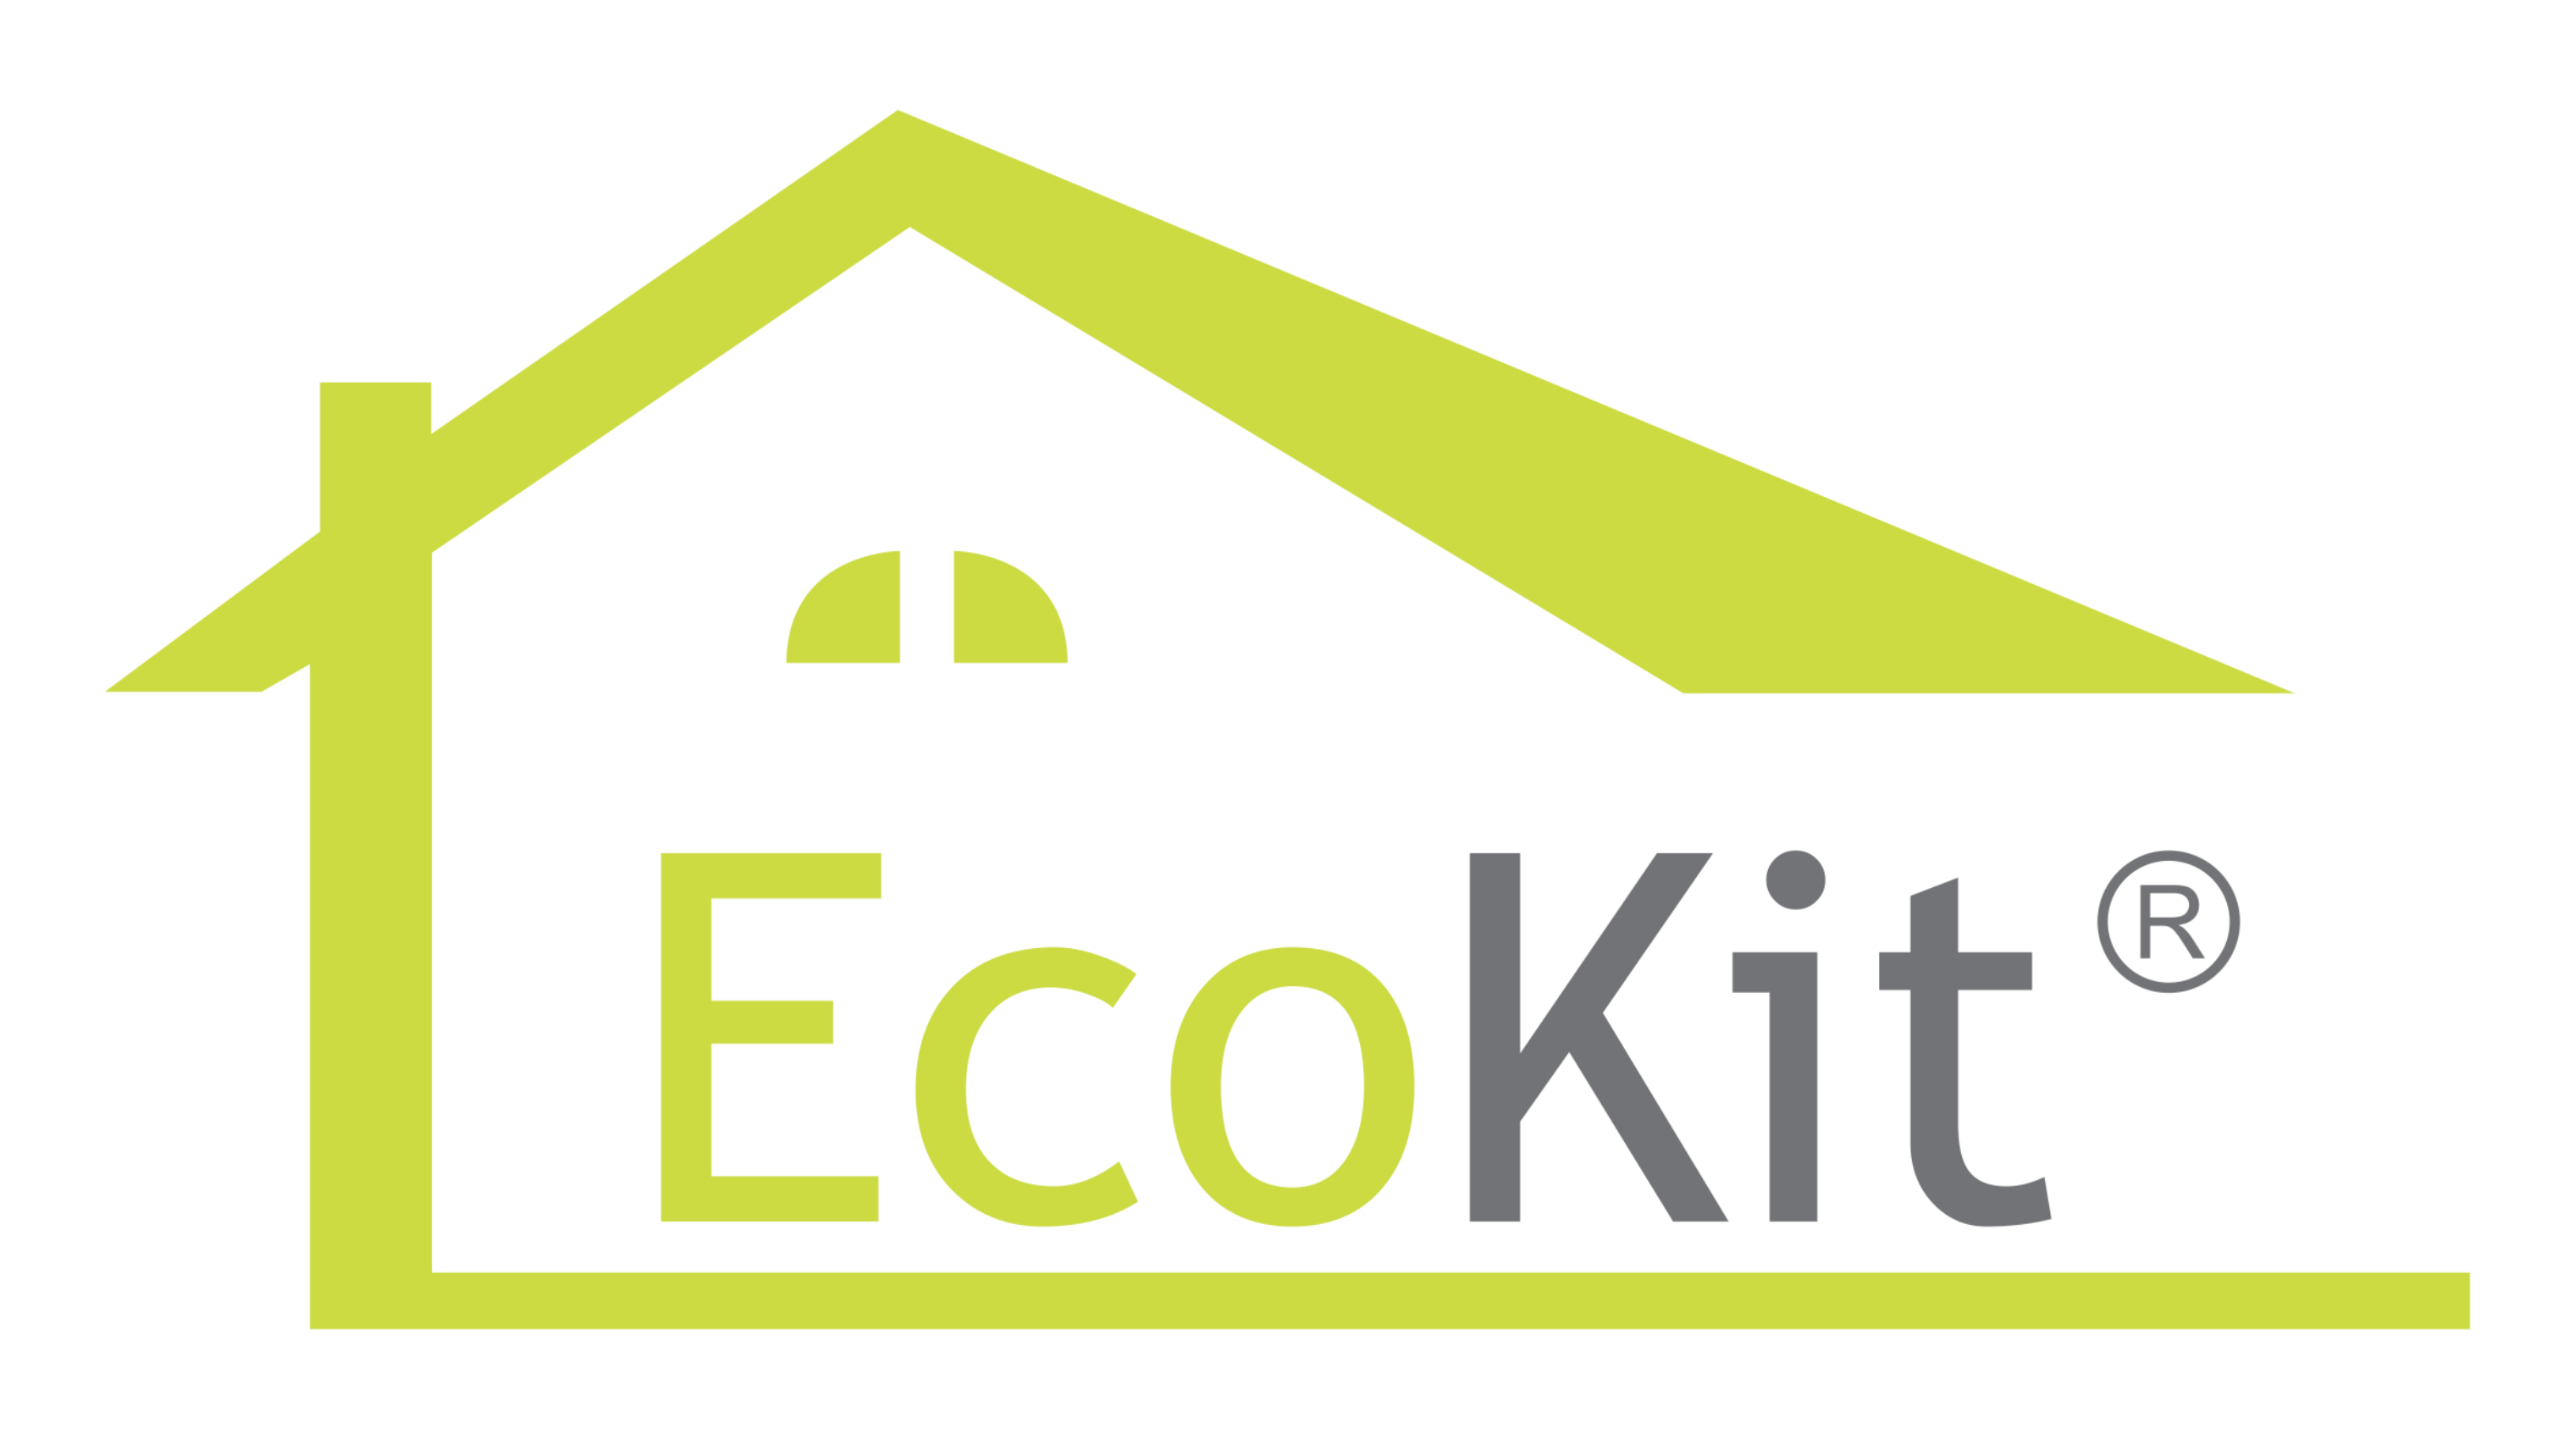 EcoKit